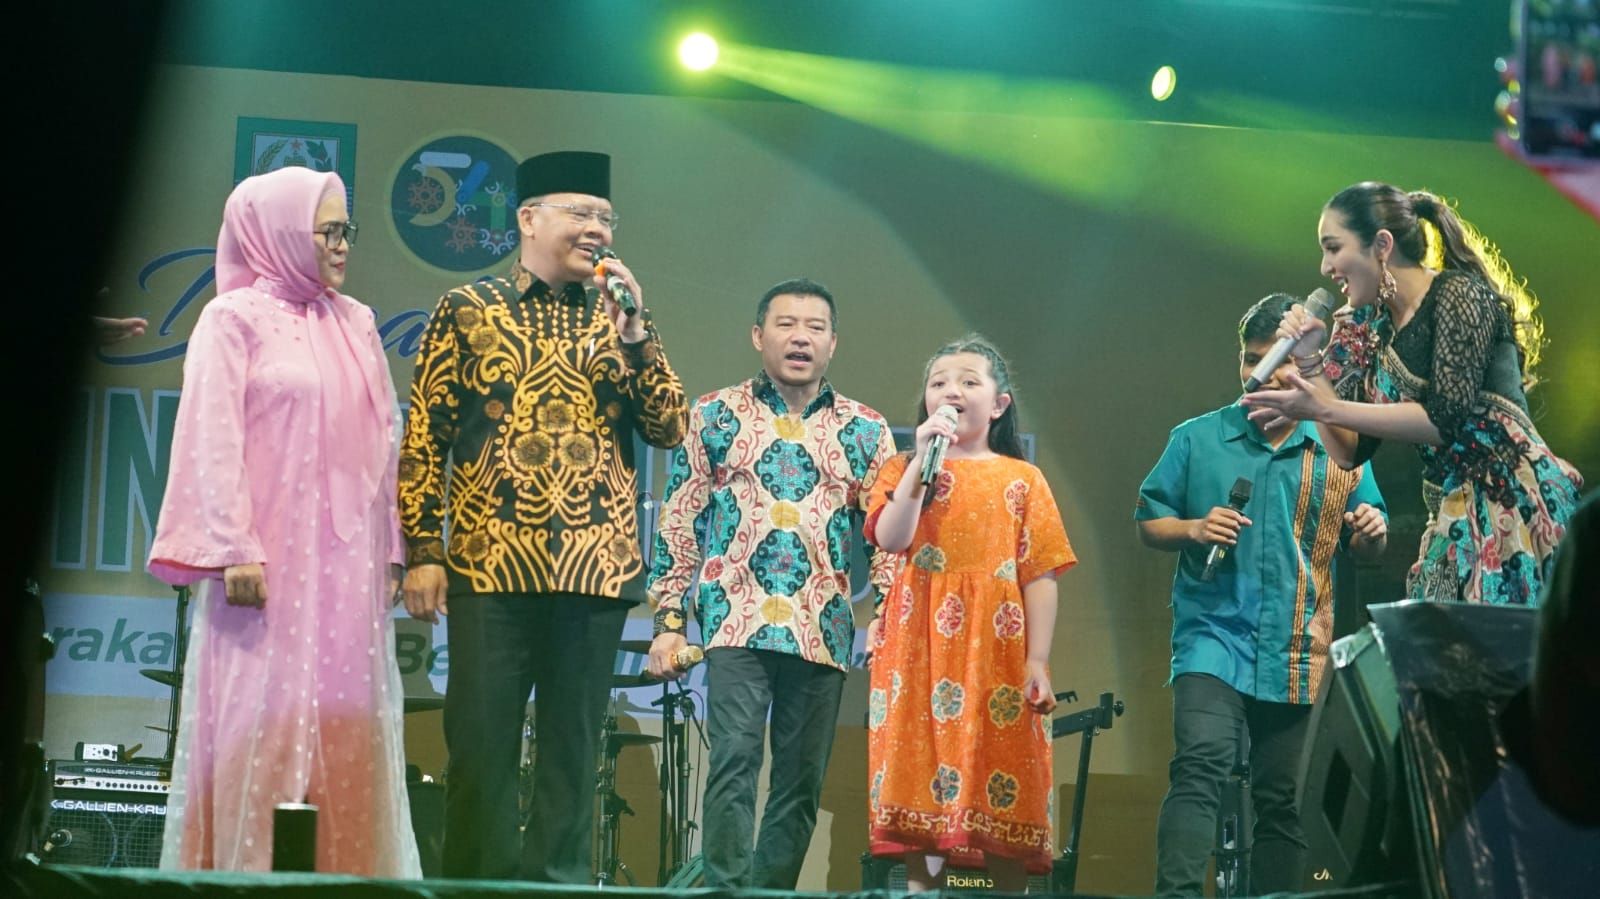 Anang Hermansyah dan Ashanty menghibur masyarakat Bengkulu pada acara malam puncak HUT ke 54 Bengkulu 